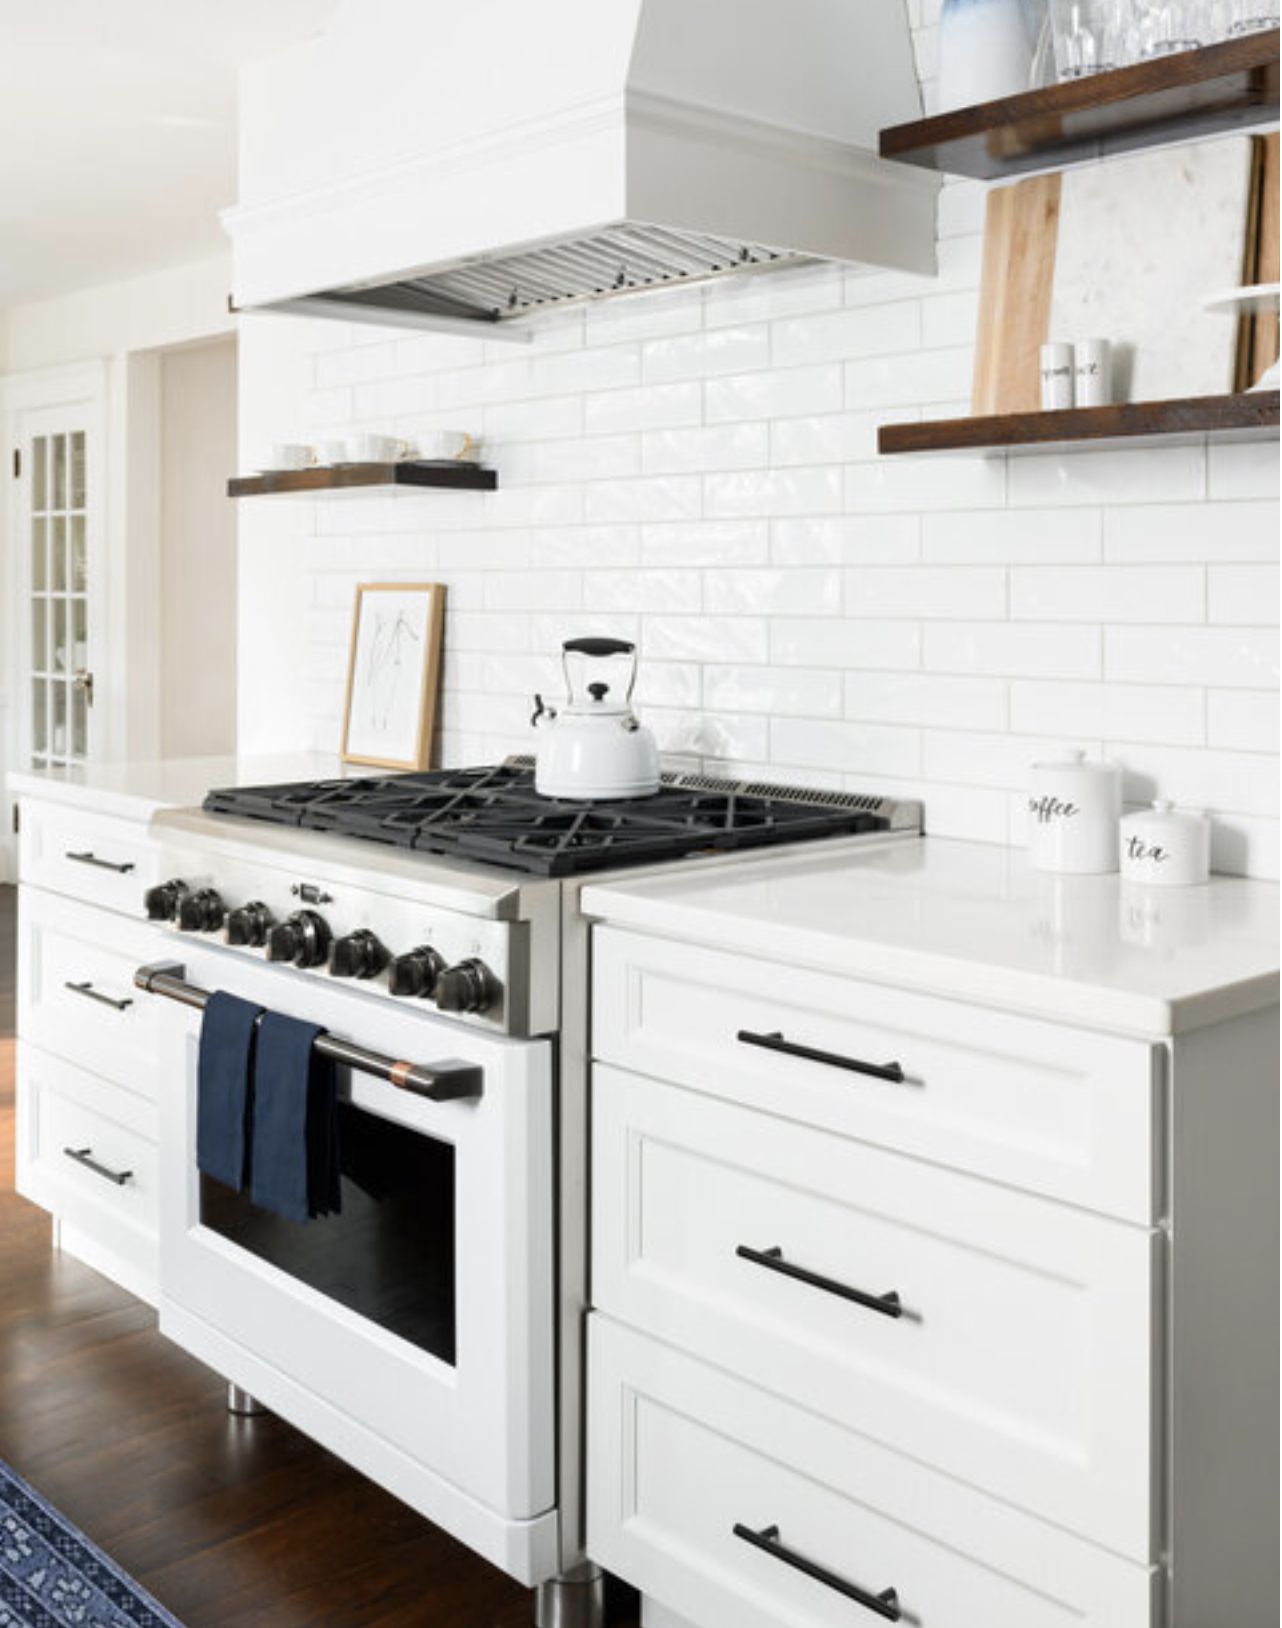 white kitchen appliances